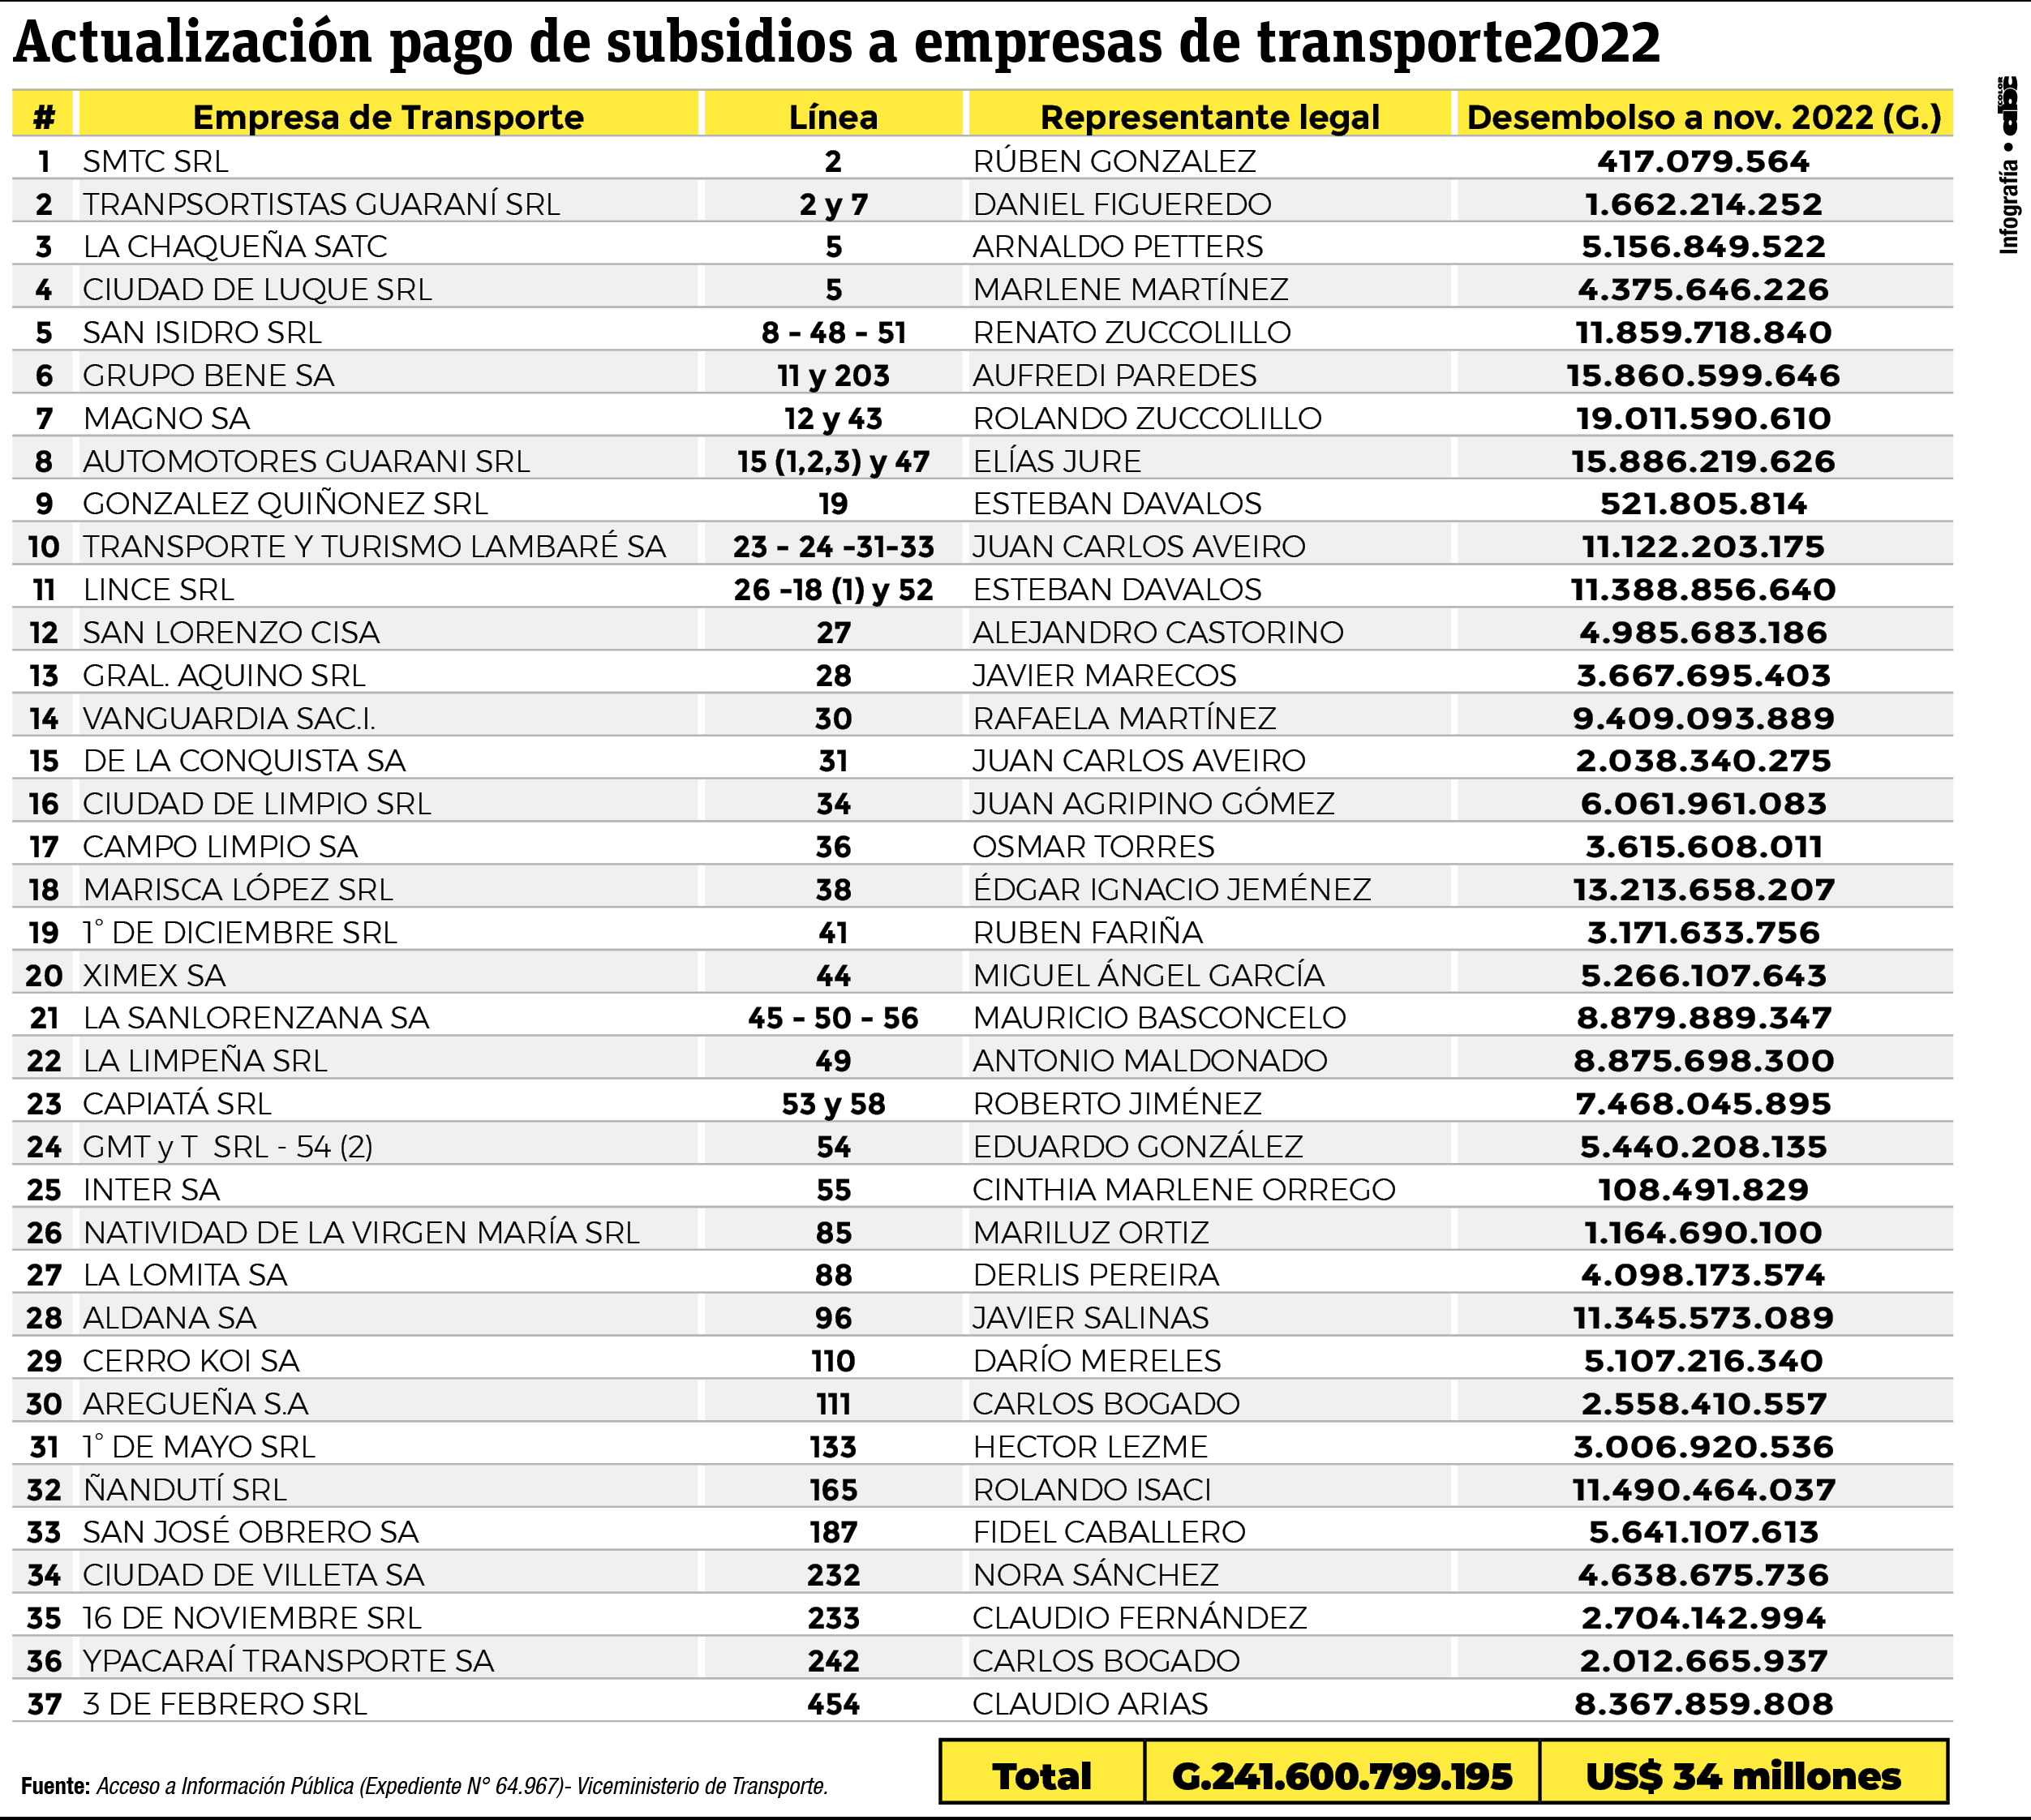 Resumen de pagos de subsidios a empresas de transporte público a noviembre del 2022.